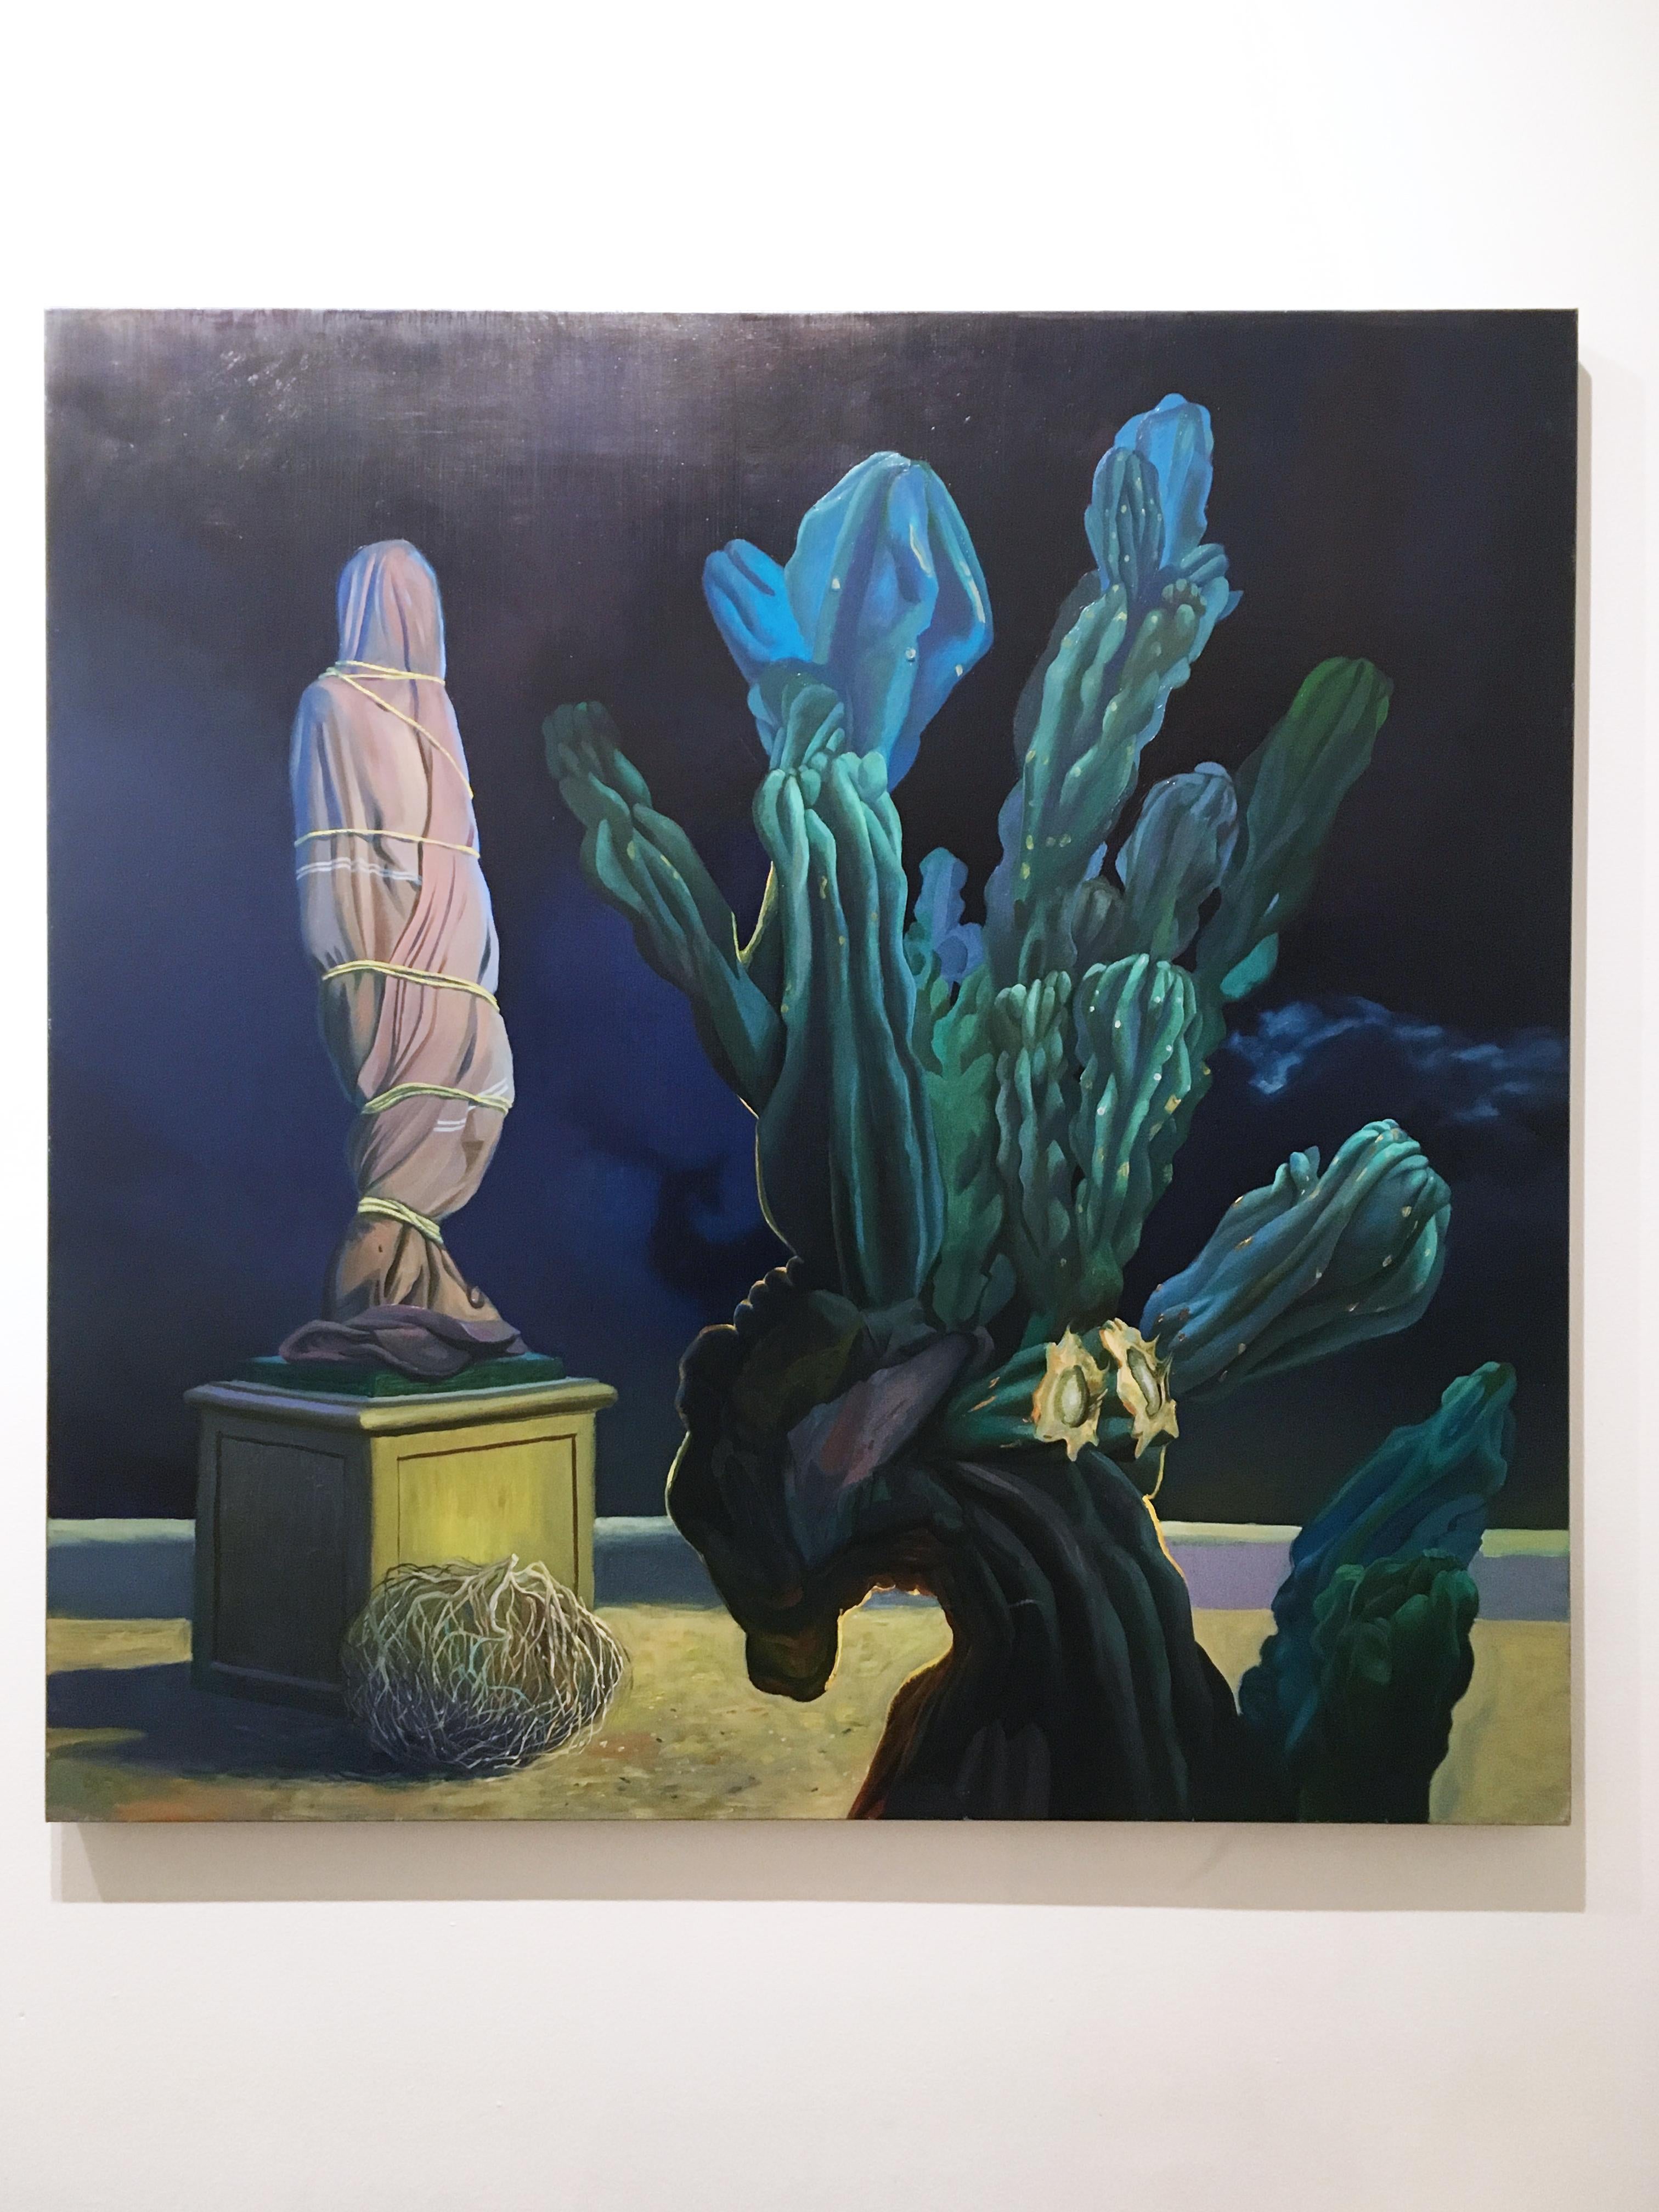 Statue, surrealistisch, figurativ, Landschaft, Öl auf Leinen, 2019 – Painting von Thomas John Carlson